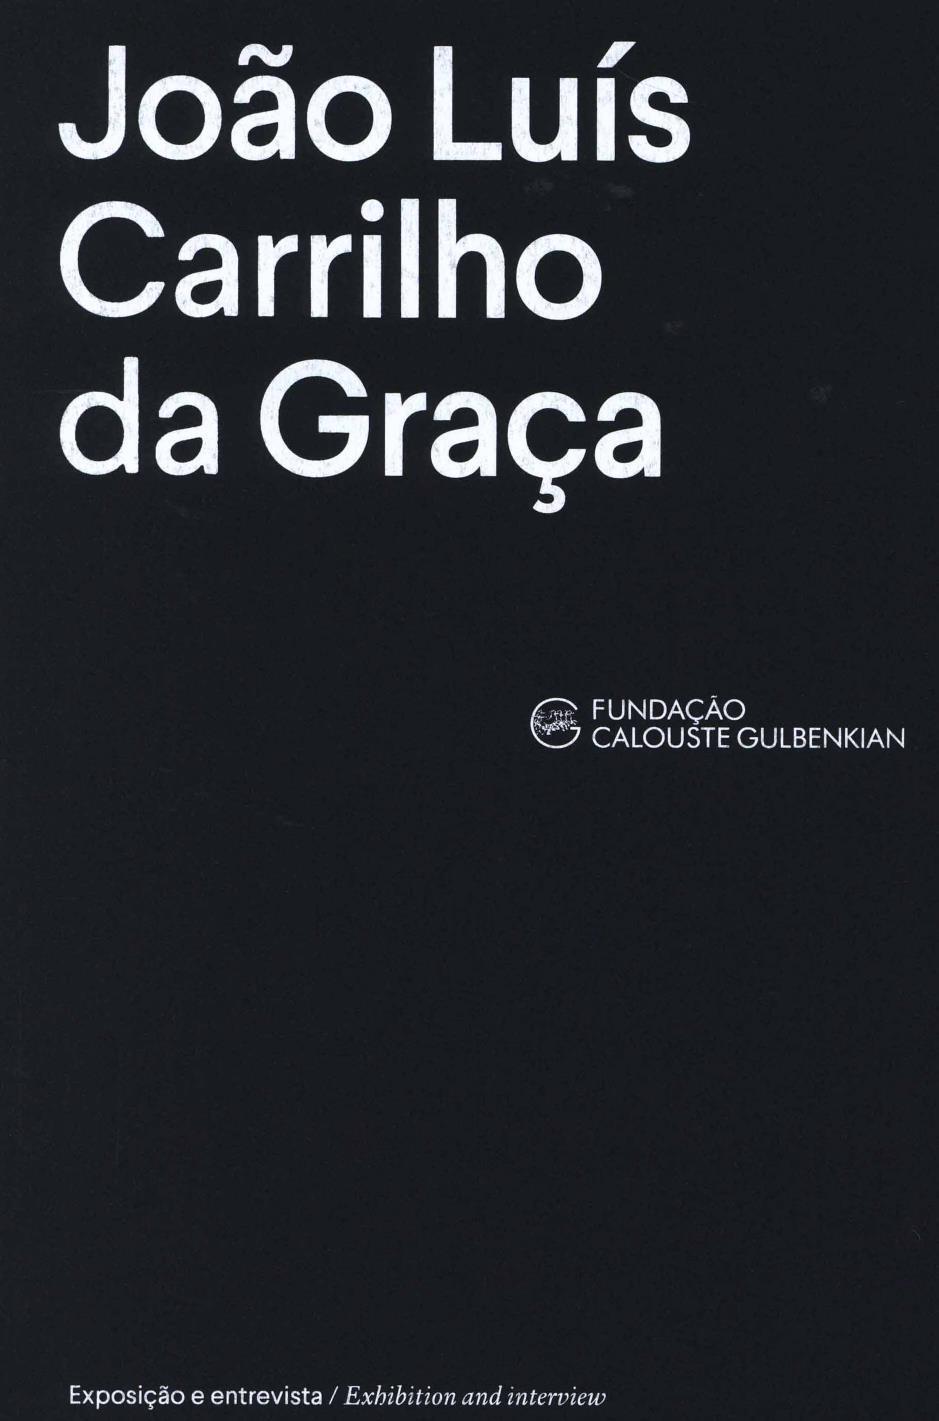 Inside a Creative Mind. João Luís Carrilho da Graça. Exposição e entrevista / Exhibition and interview